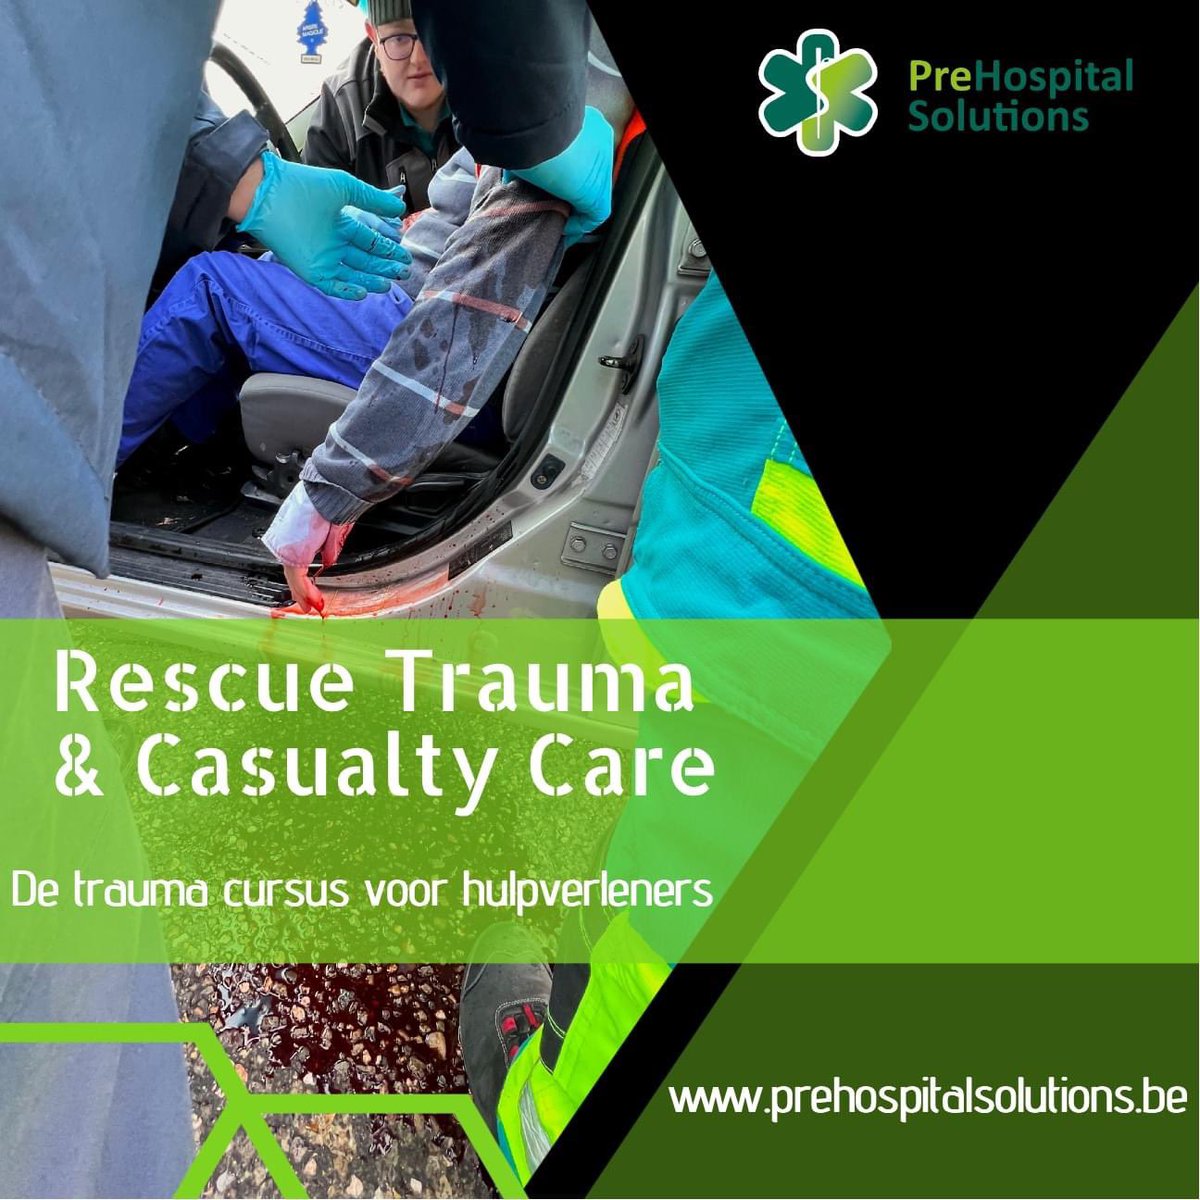 DE #trauma cursus voor de #hulpverlener ... Rescue Trauma & Casualty Care (#RTACC).

Intensieve en realistische 3 daagse cursus waar je als cursist te maken krijgt met realistische (trauma) scenario's. 

prehospitalsolutions.be/opleidingen/re…

#ambulance #MUG #ambulancier #verpleegkundige #DGH